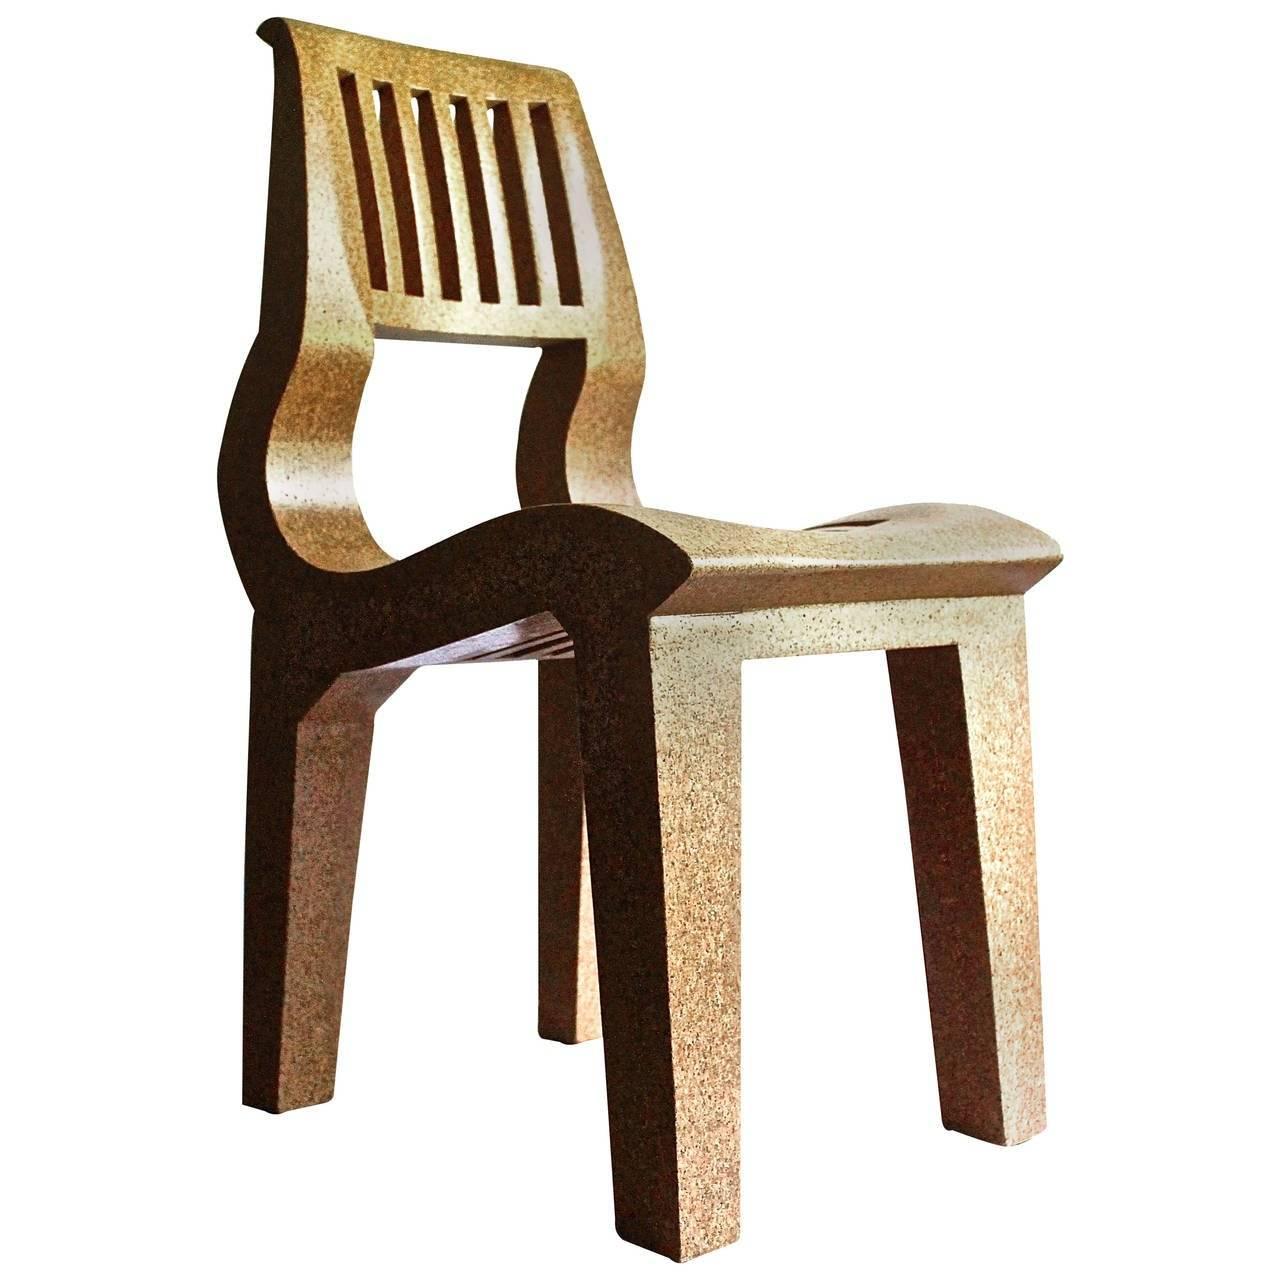  Kevin Walz Korqinc Chair,  Knoll 1997